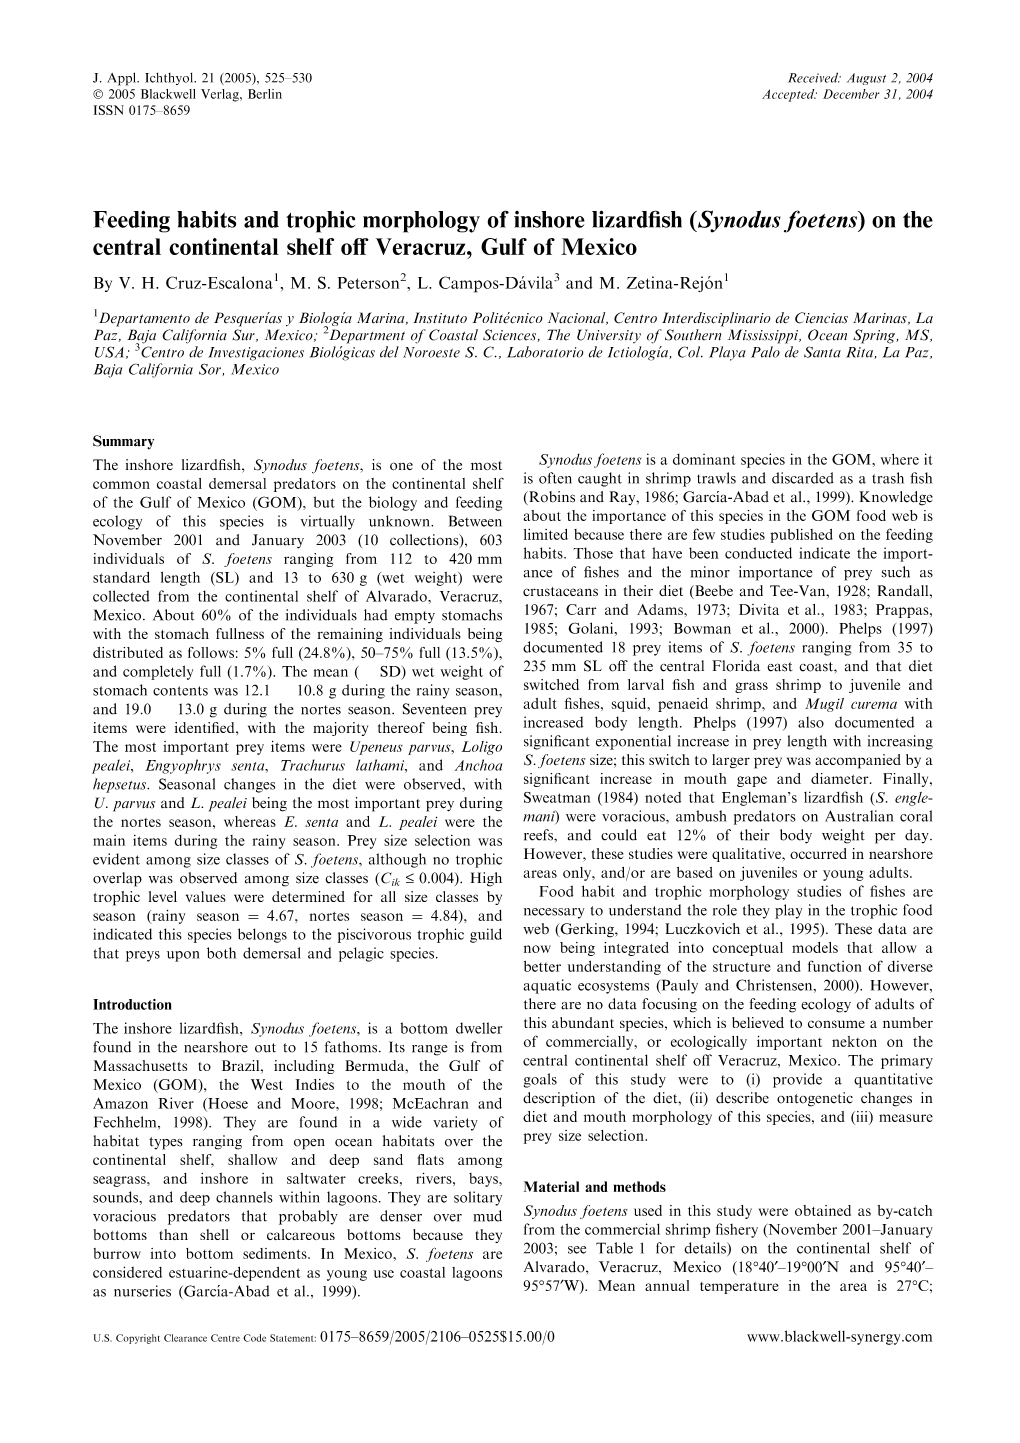 Feeding Habits and Trophic Morphology of Inshore Lizardfish